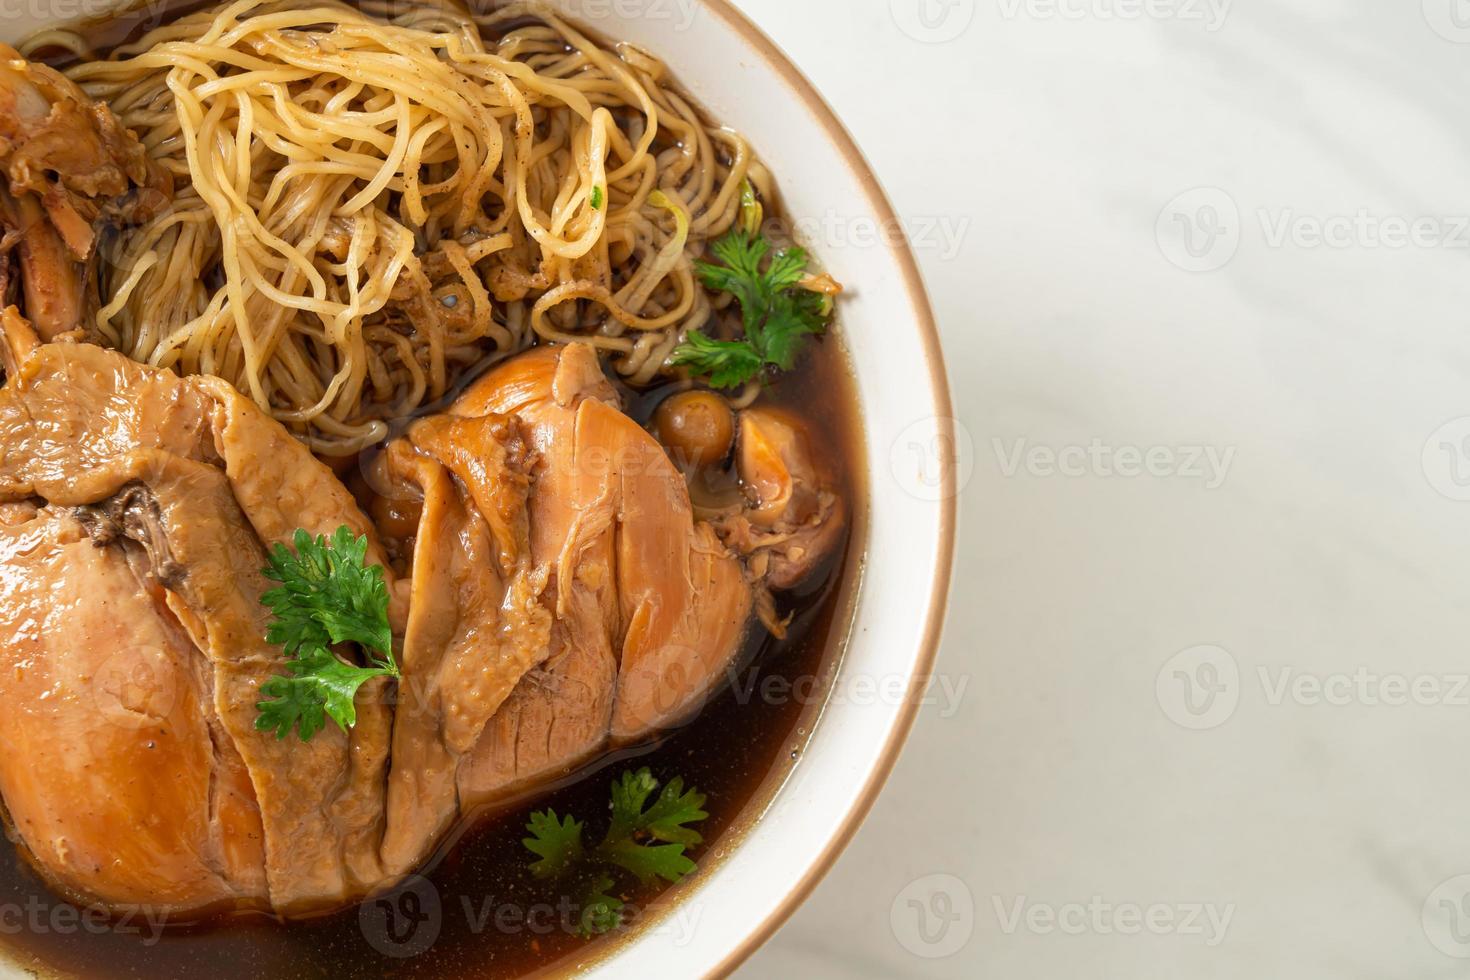 macarrão com frango assado na sopa marrom foto